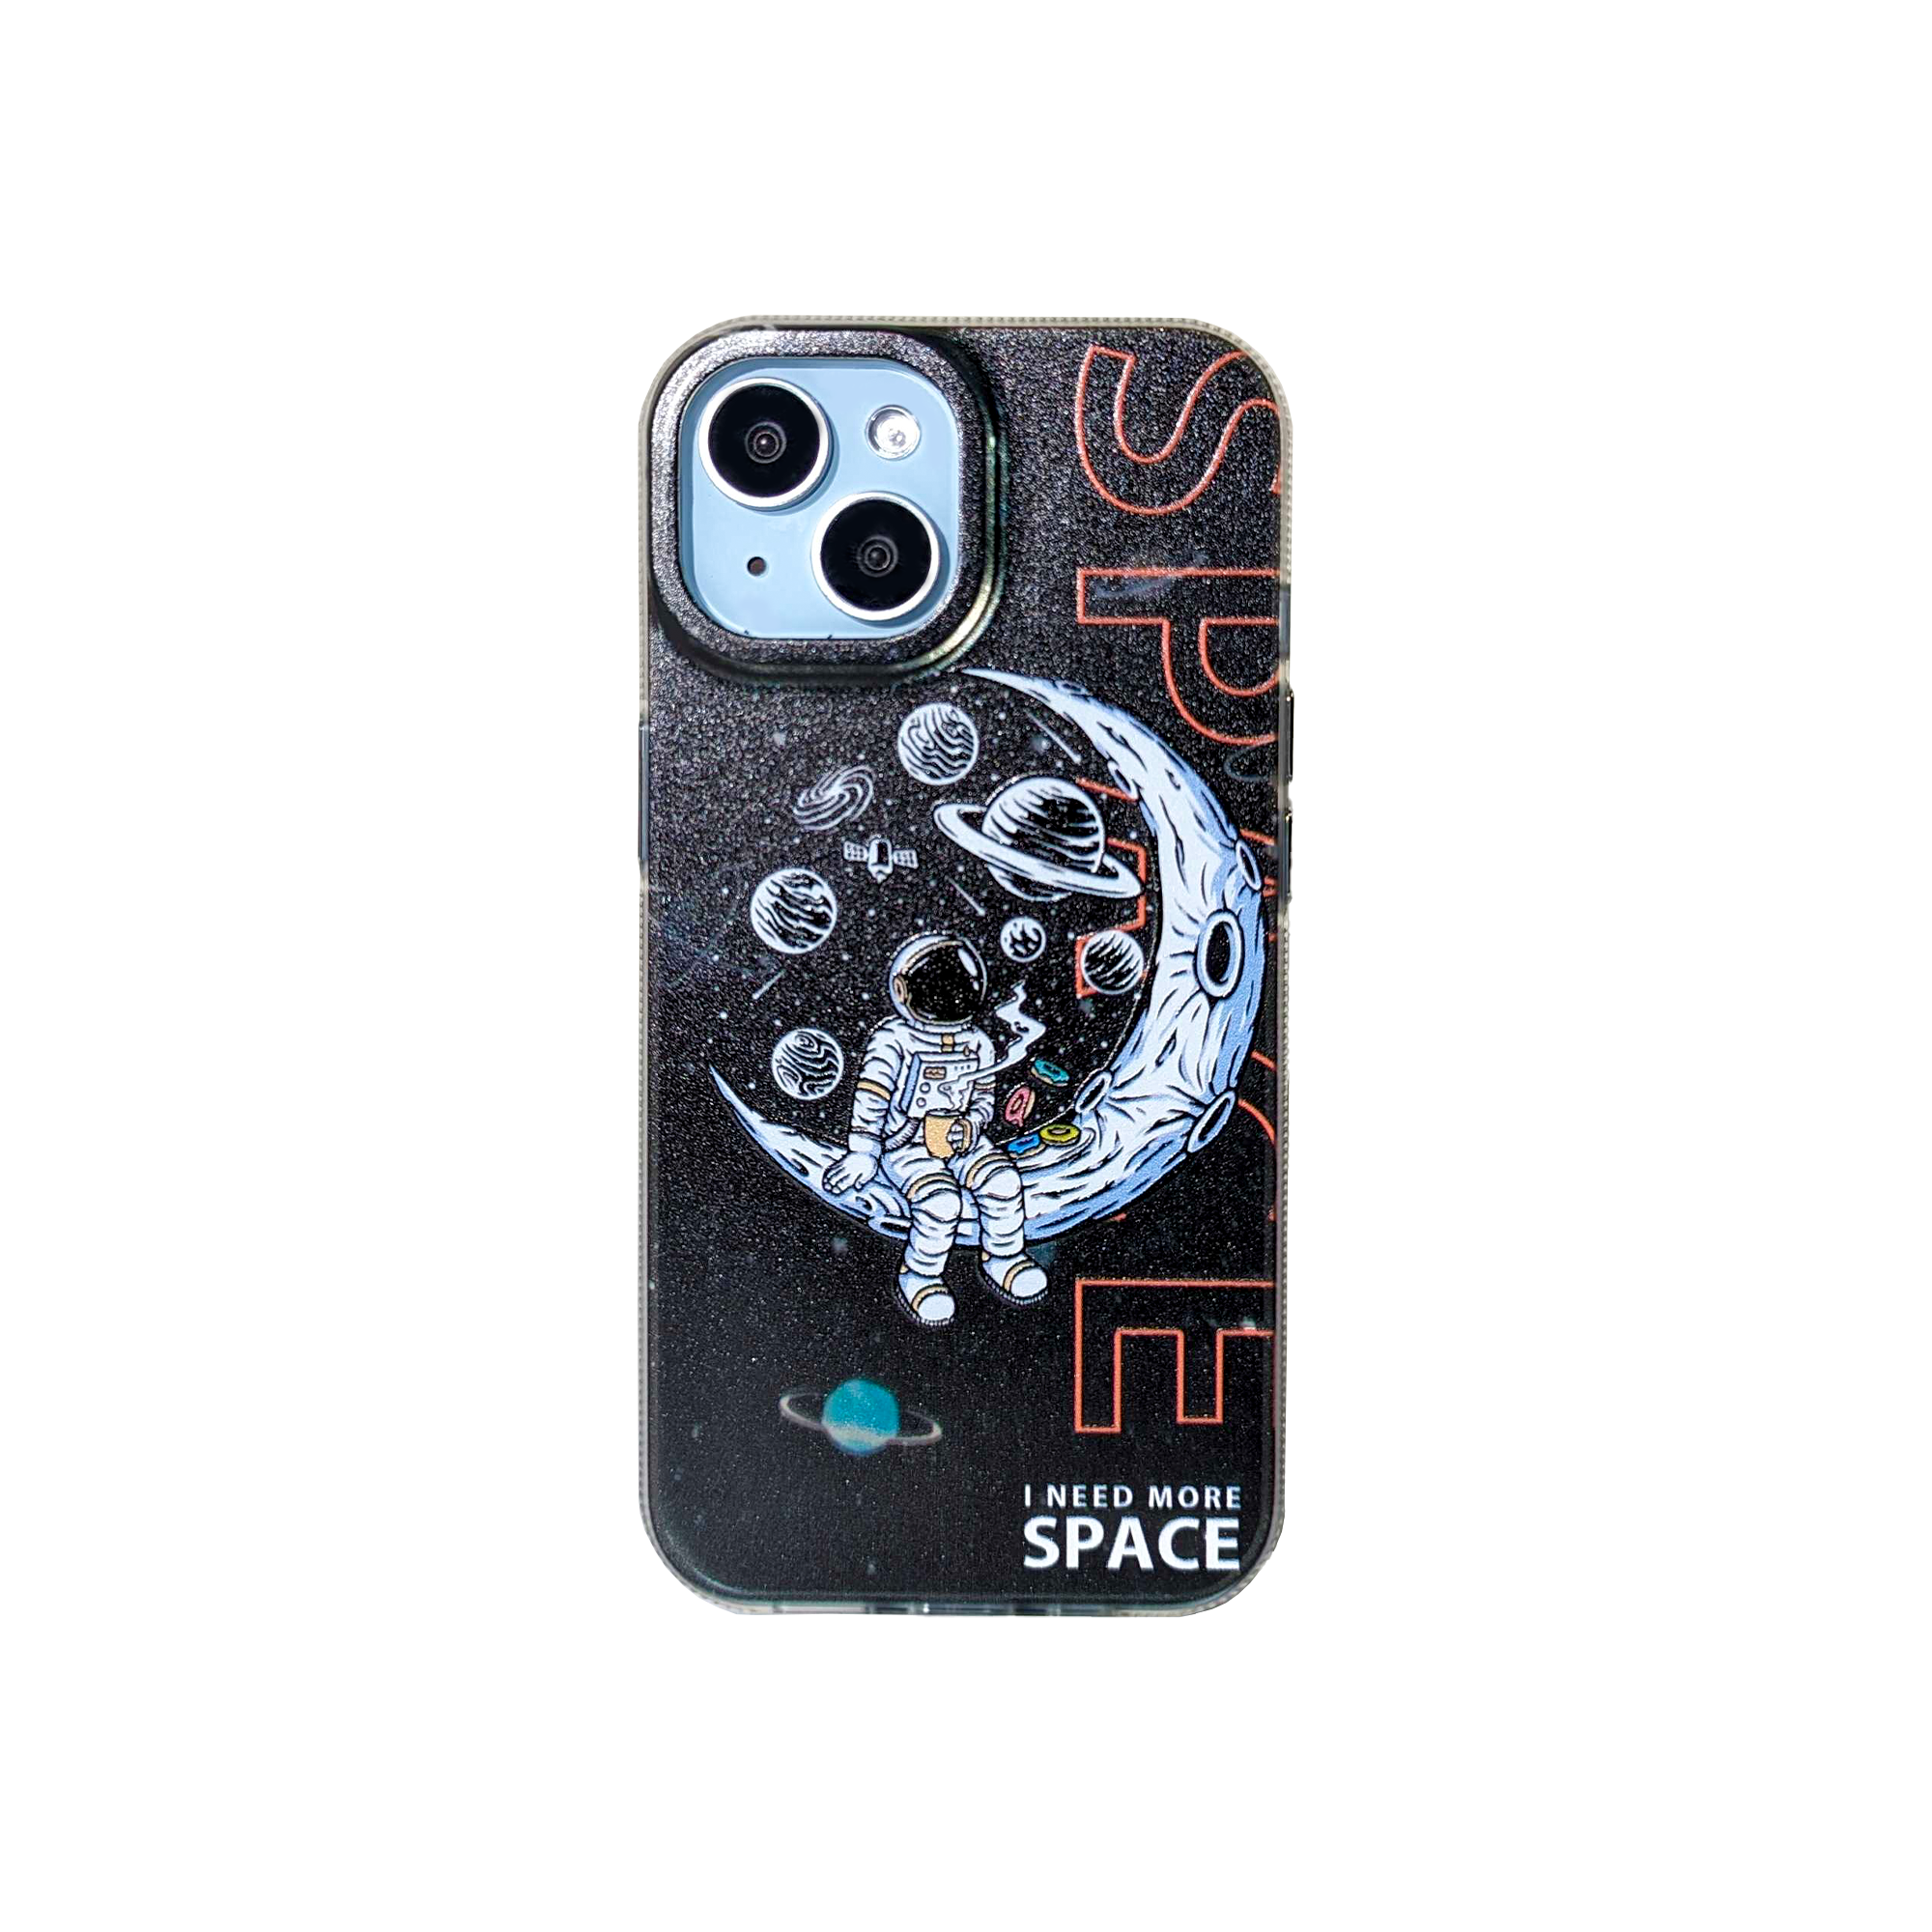 SpaceCrave iPhone Case